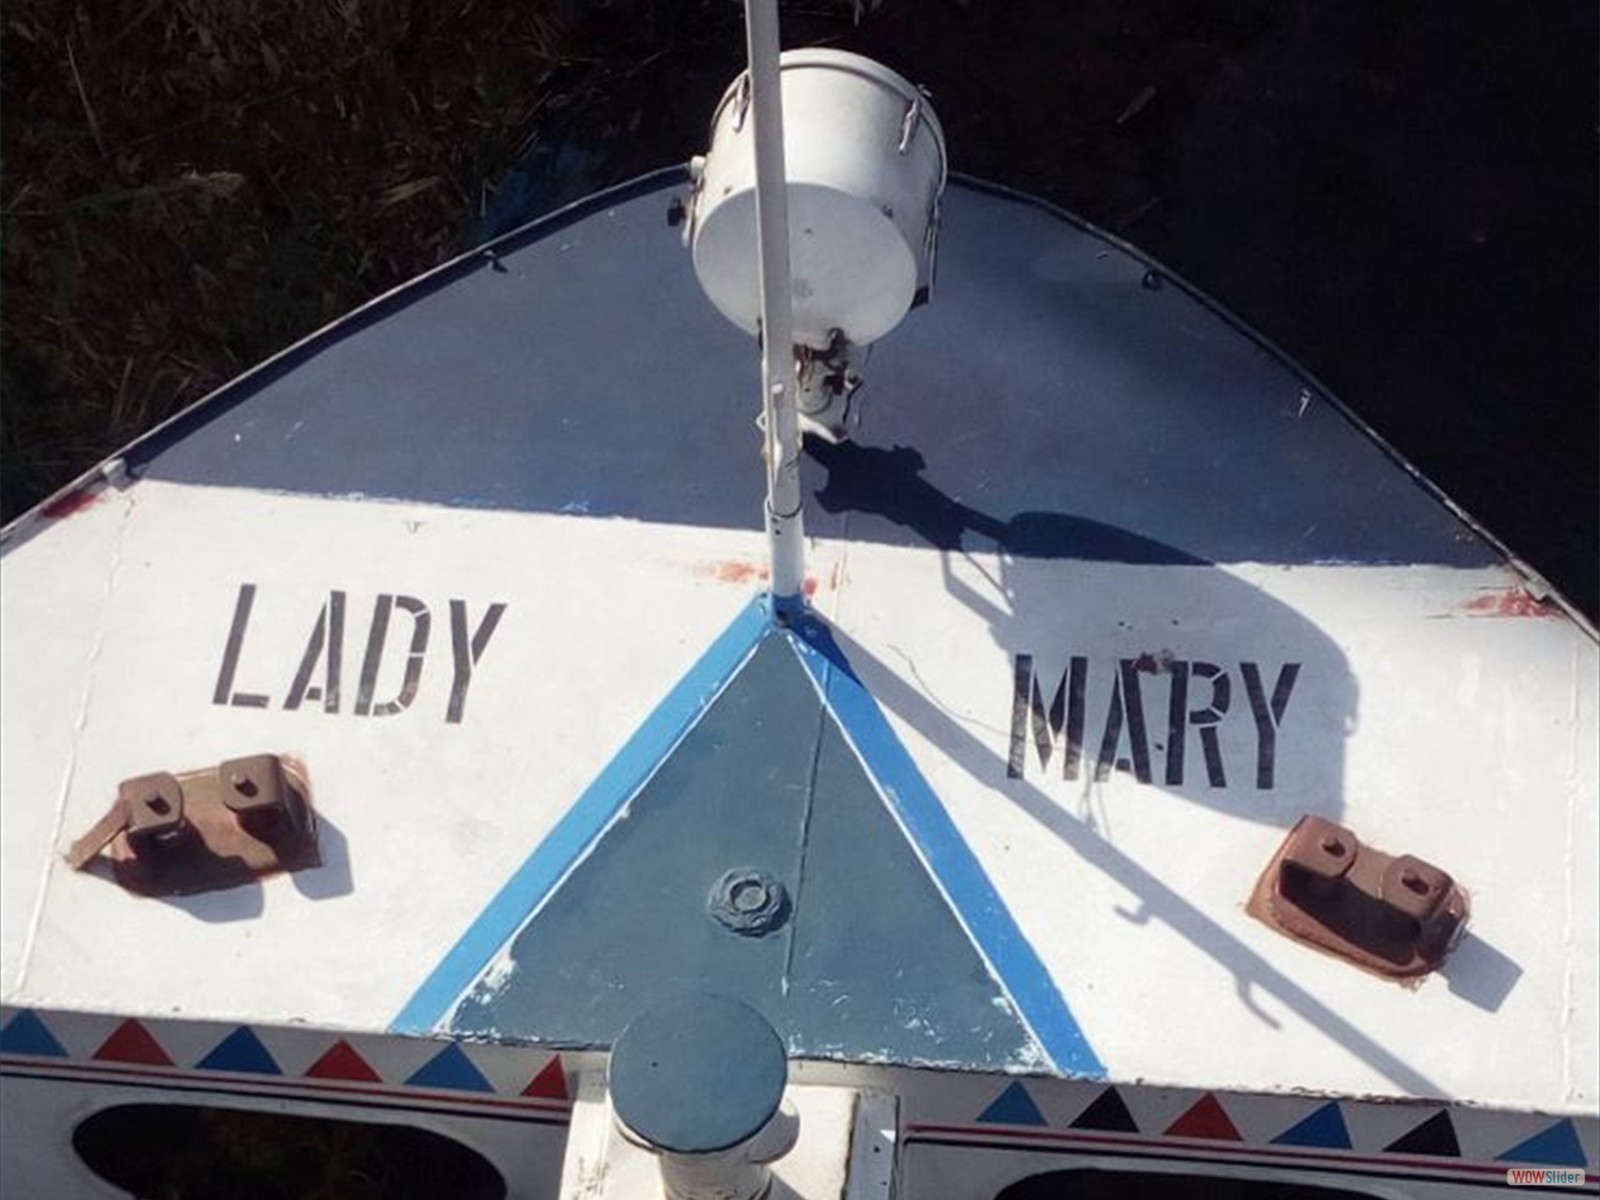 Unser Dampfer: mehr merry als Lady